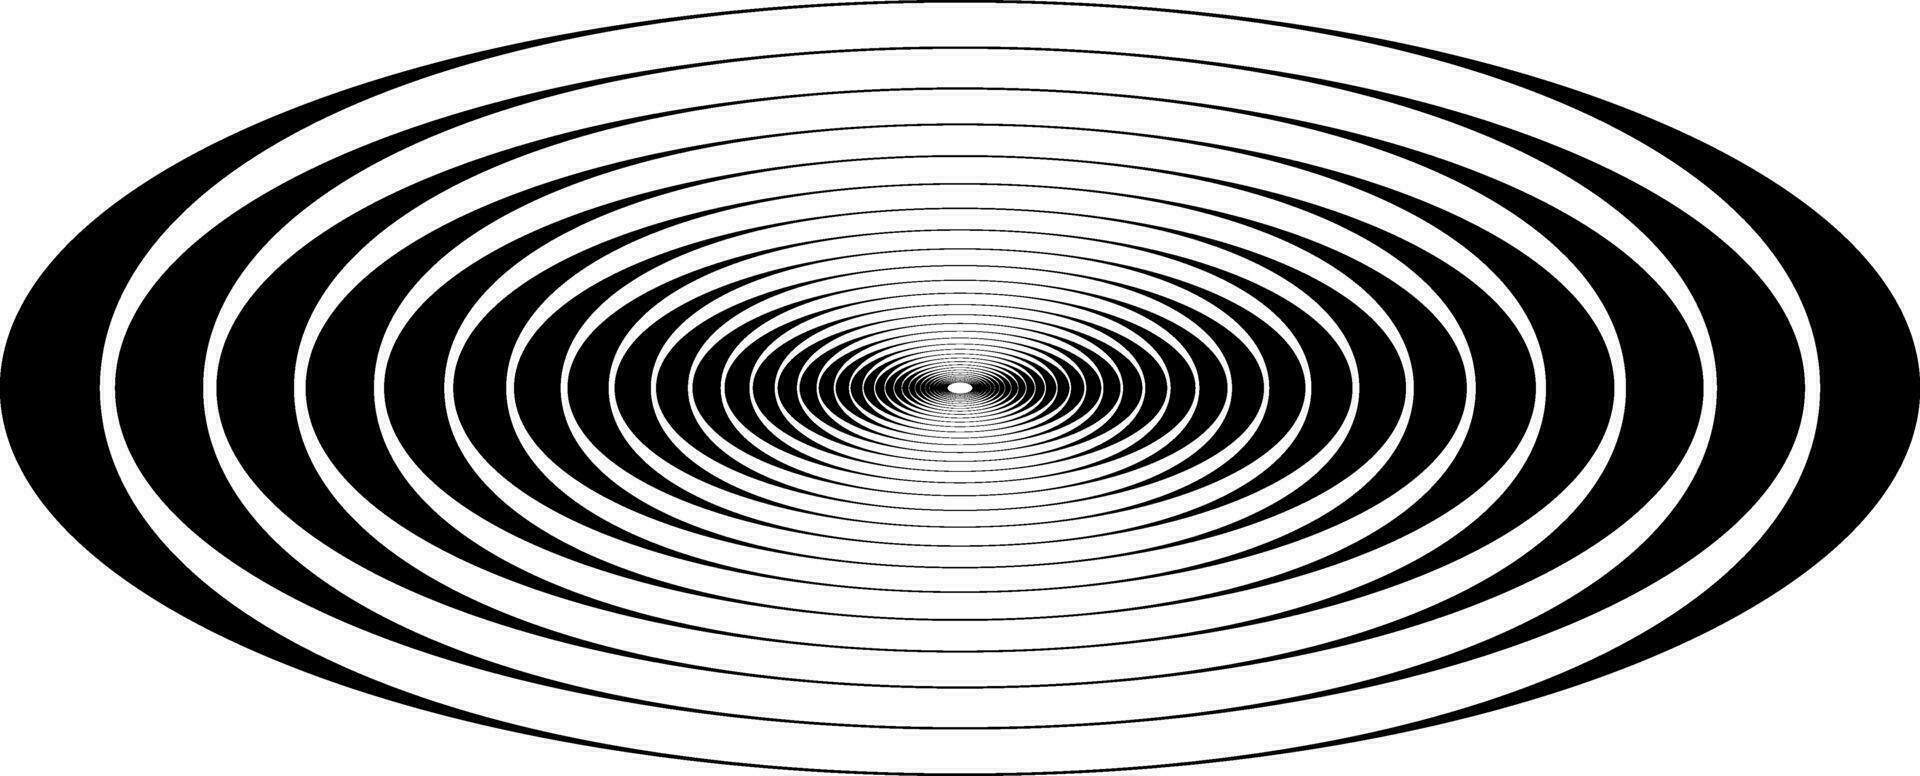 koncentrisk cirkel oval resonans vågor, visuell representation resonans vågor vektor